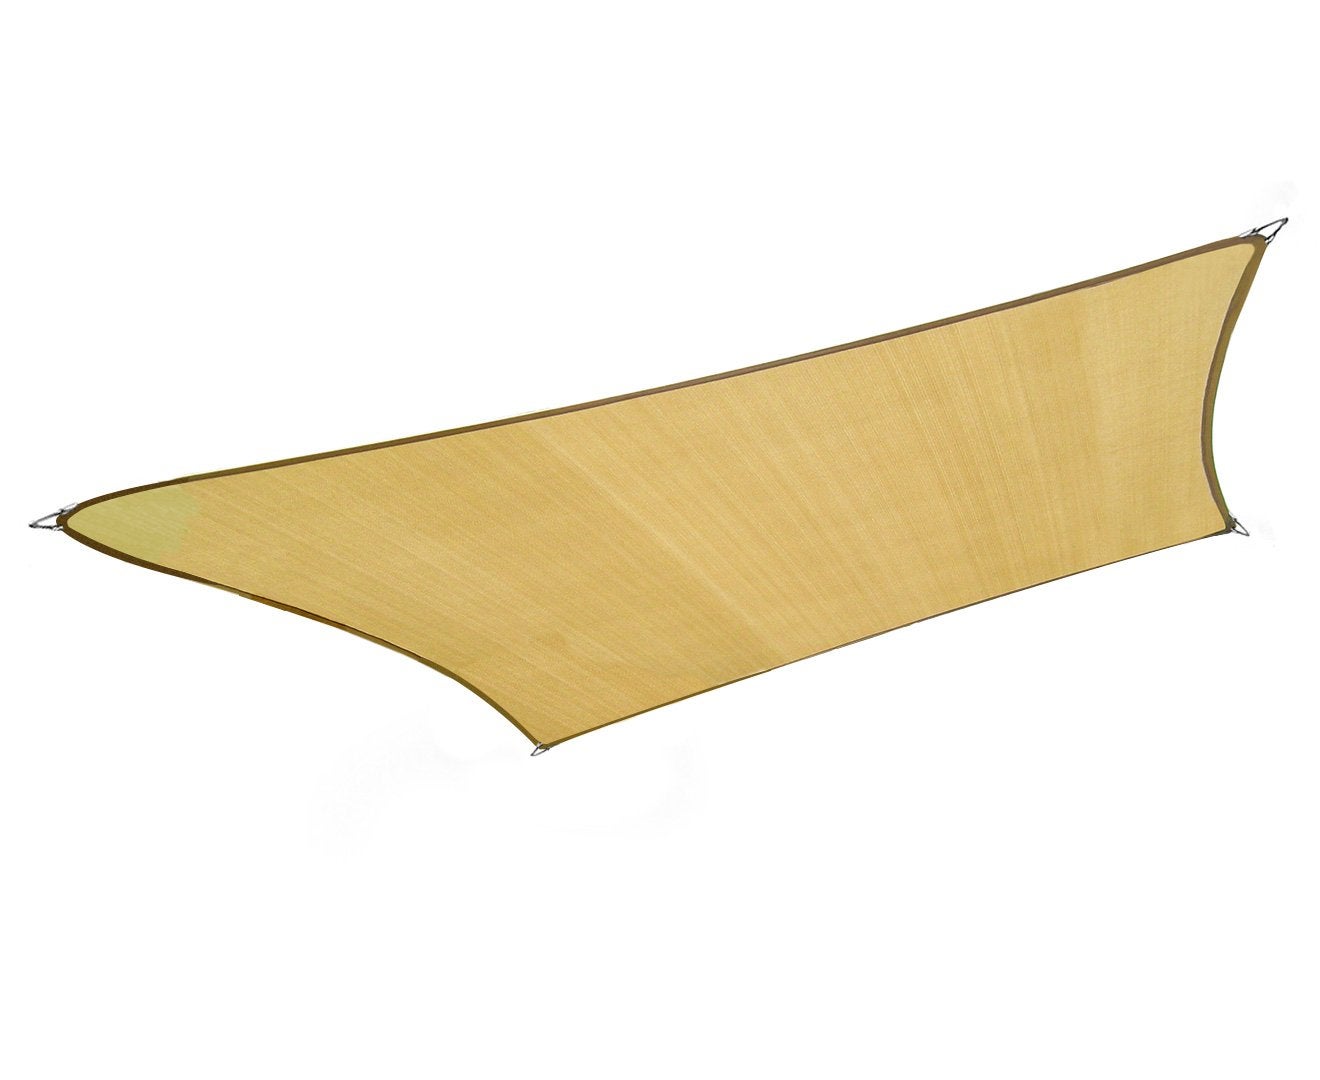 Wallaroo 2m X 2.5m Outdoor Sun Shade Sail Canopy - Sand Cloth Rectangular